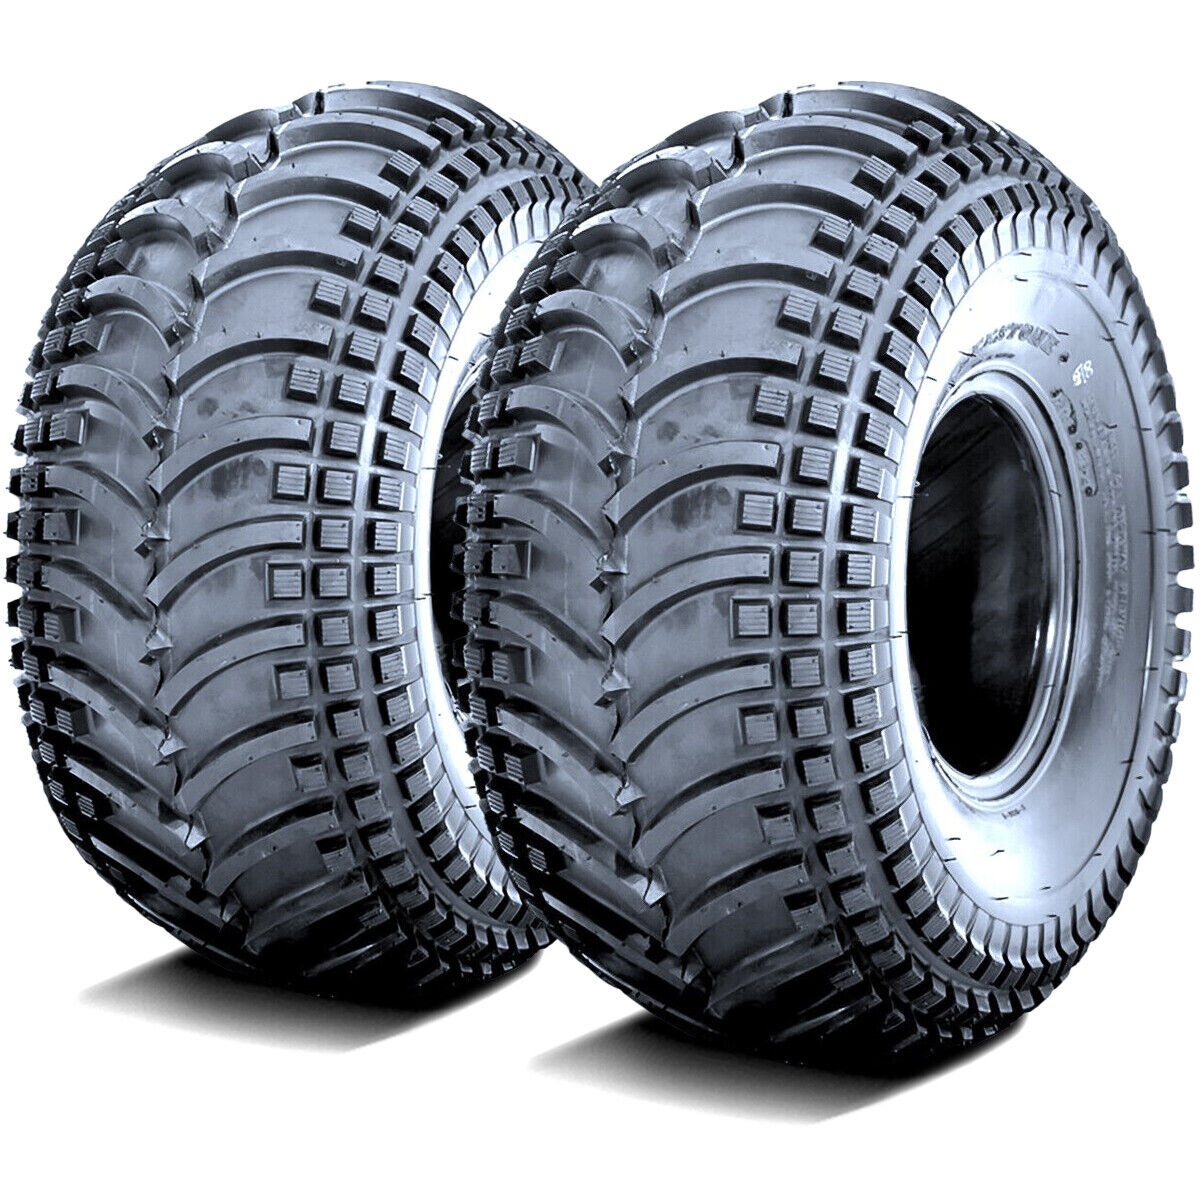 2 Tires Deestone D930 22x11.00-10 22x11-10 22x11x10 42F 4 Ply MT M/T Mud ATV UTV